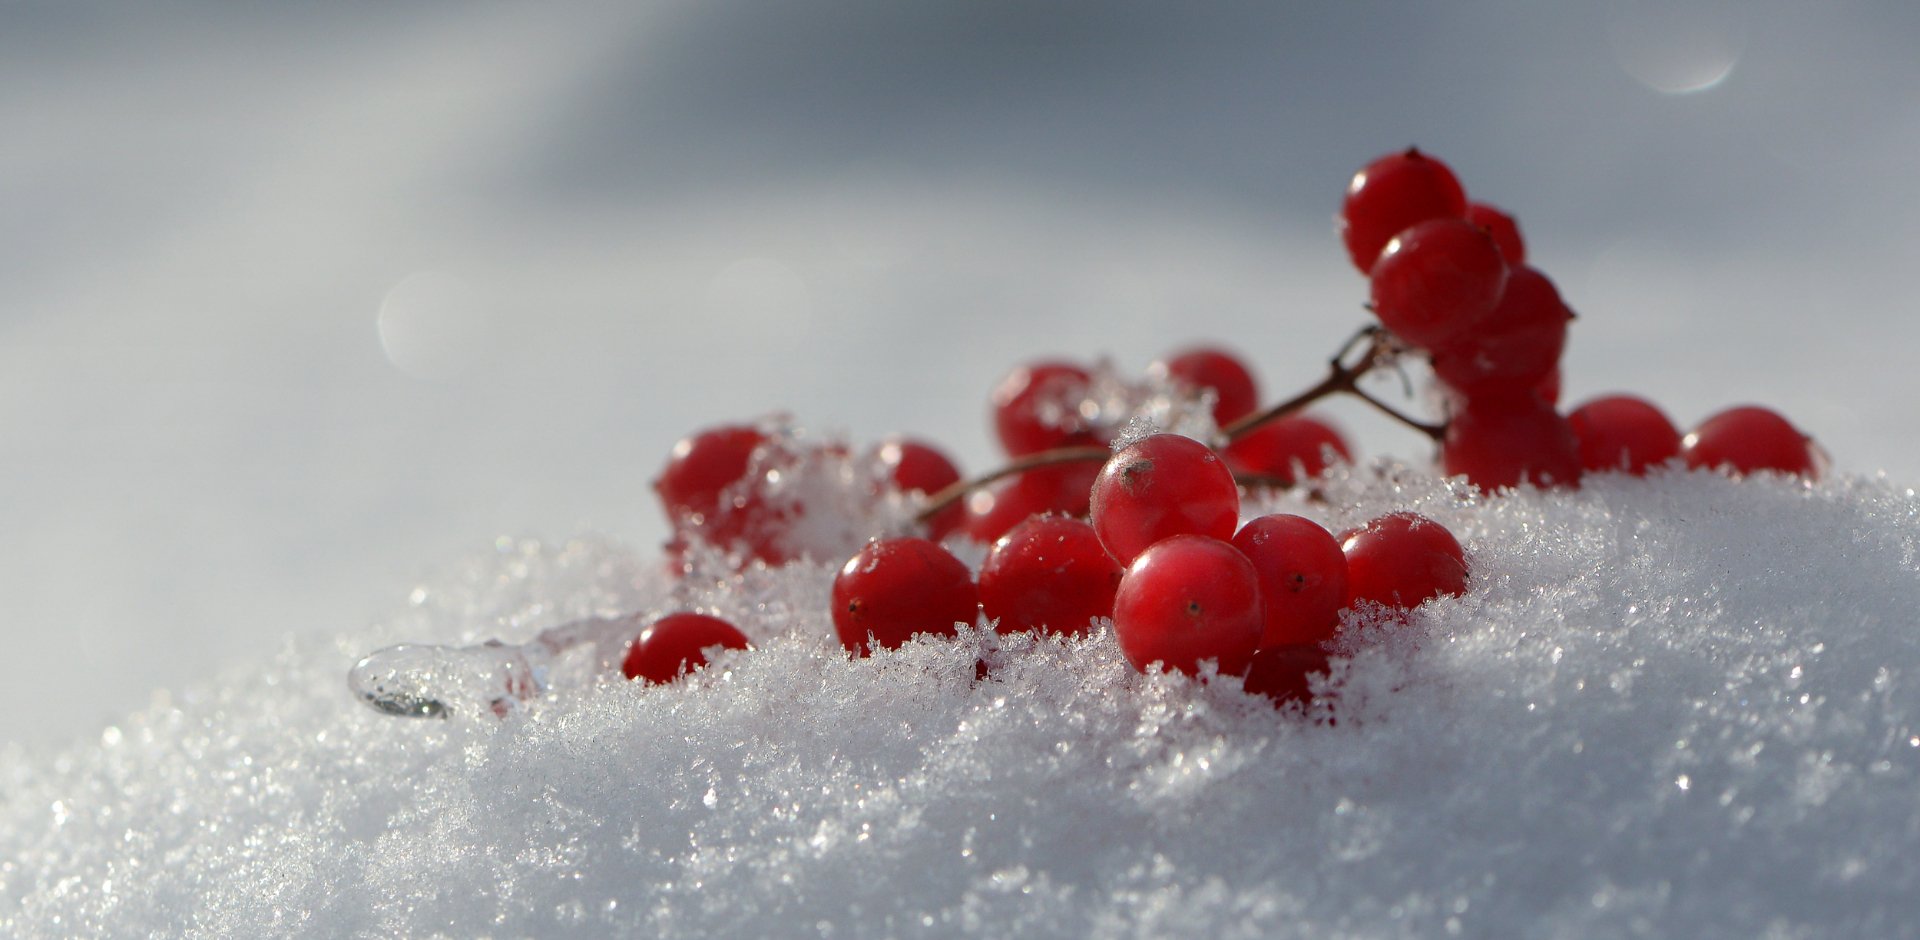 природа, макро, белый и красный, снег, белый, пушистый, ягоды, калина красная, Неля Рачкова